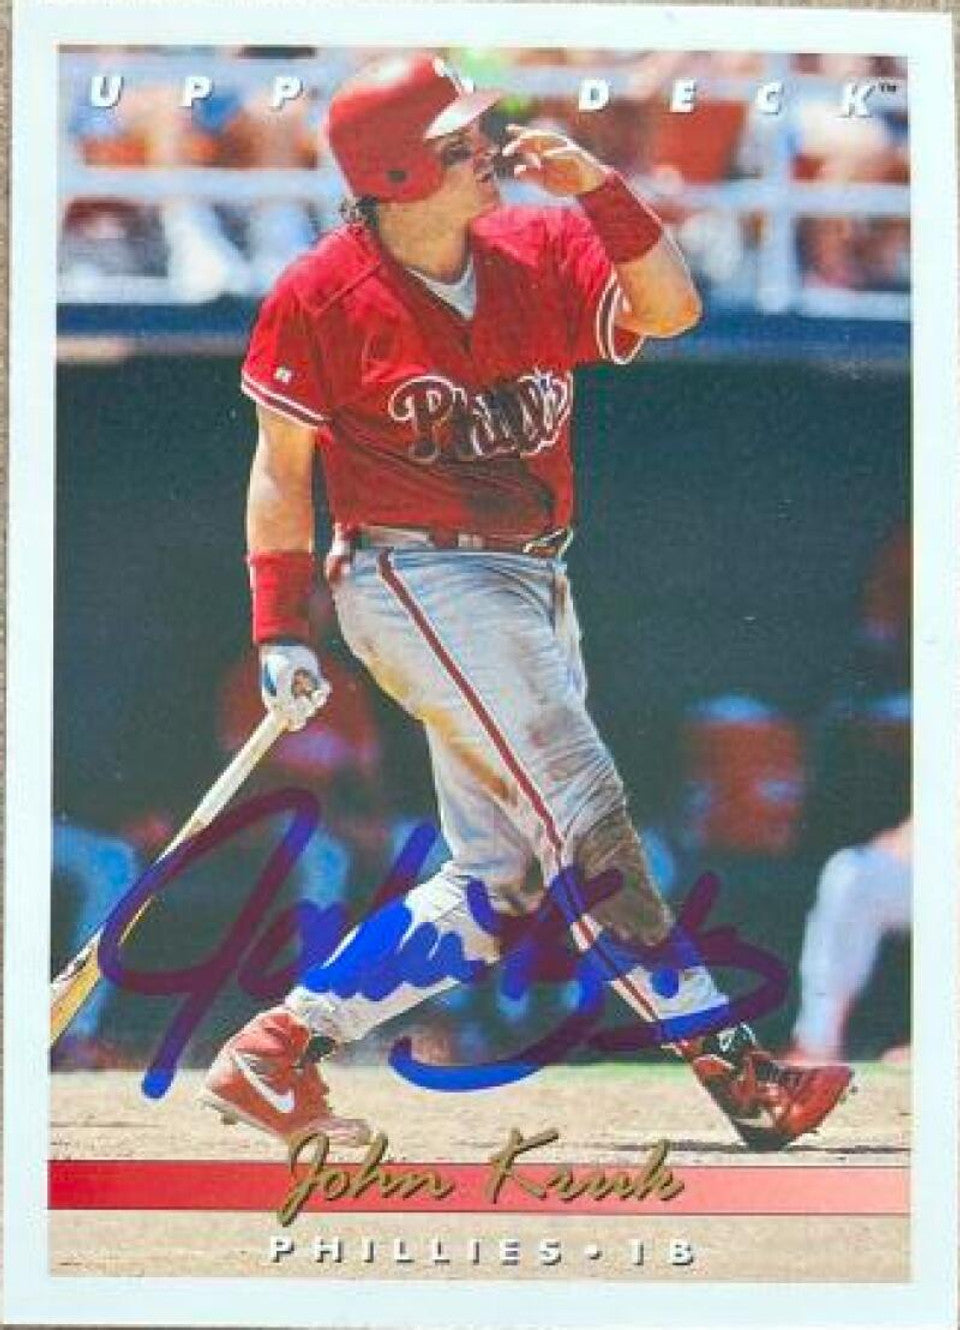 John Kruk Signed 1993 Upper Deck Baseball Card - Philadelphia Phillies